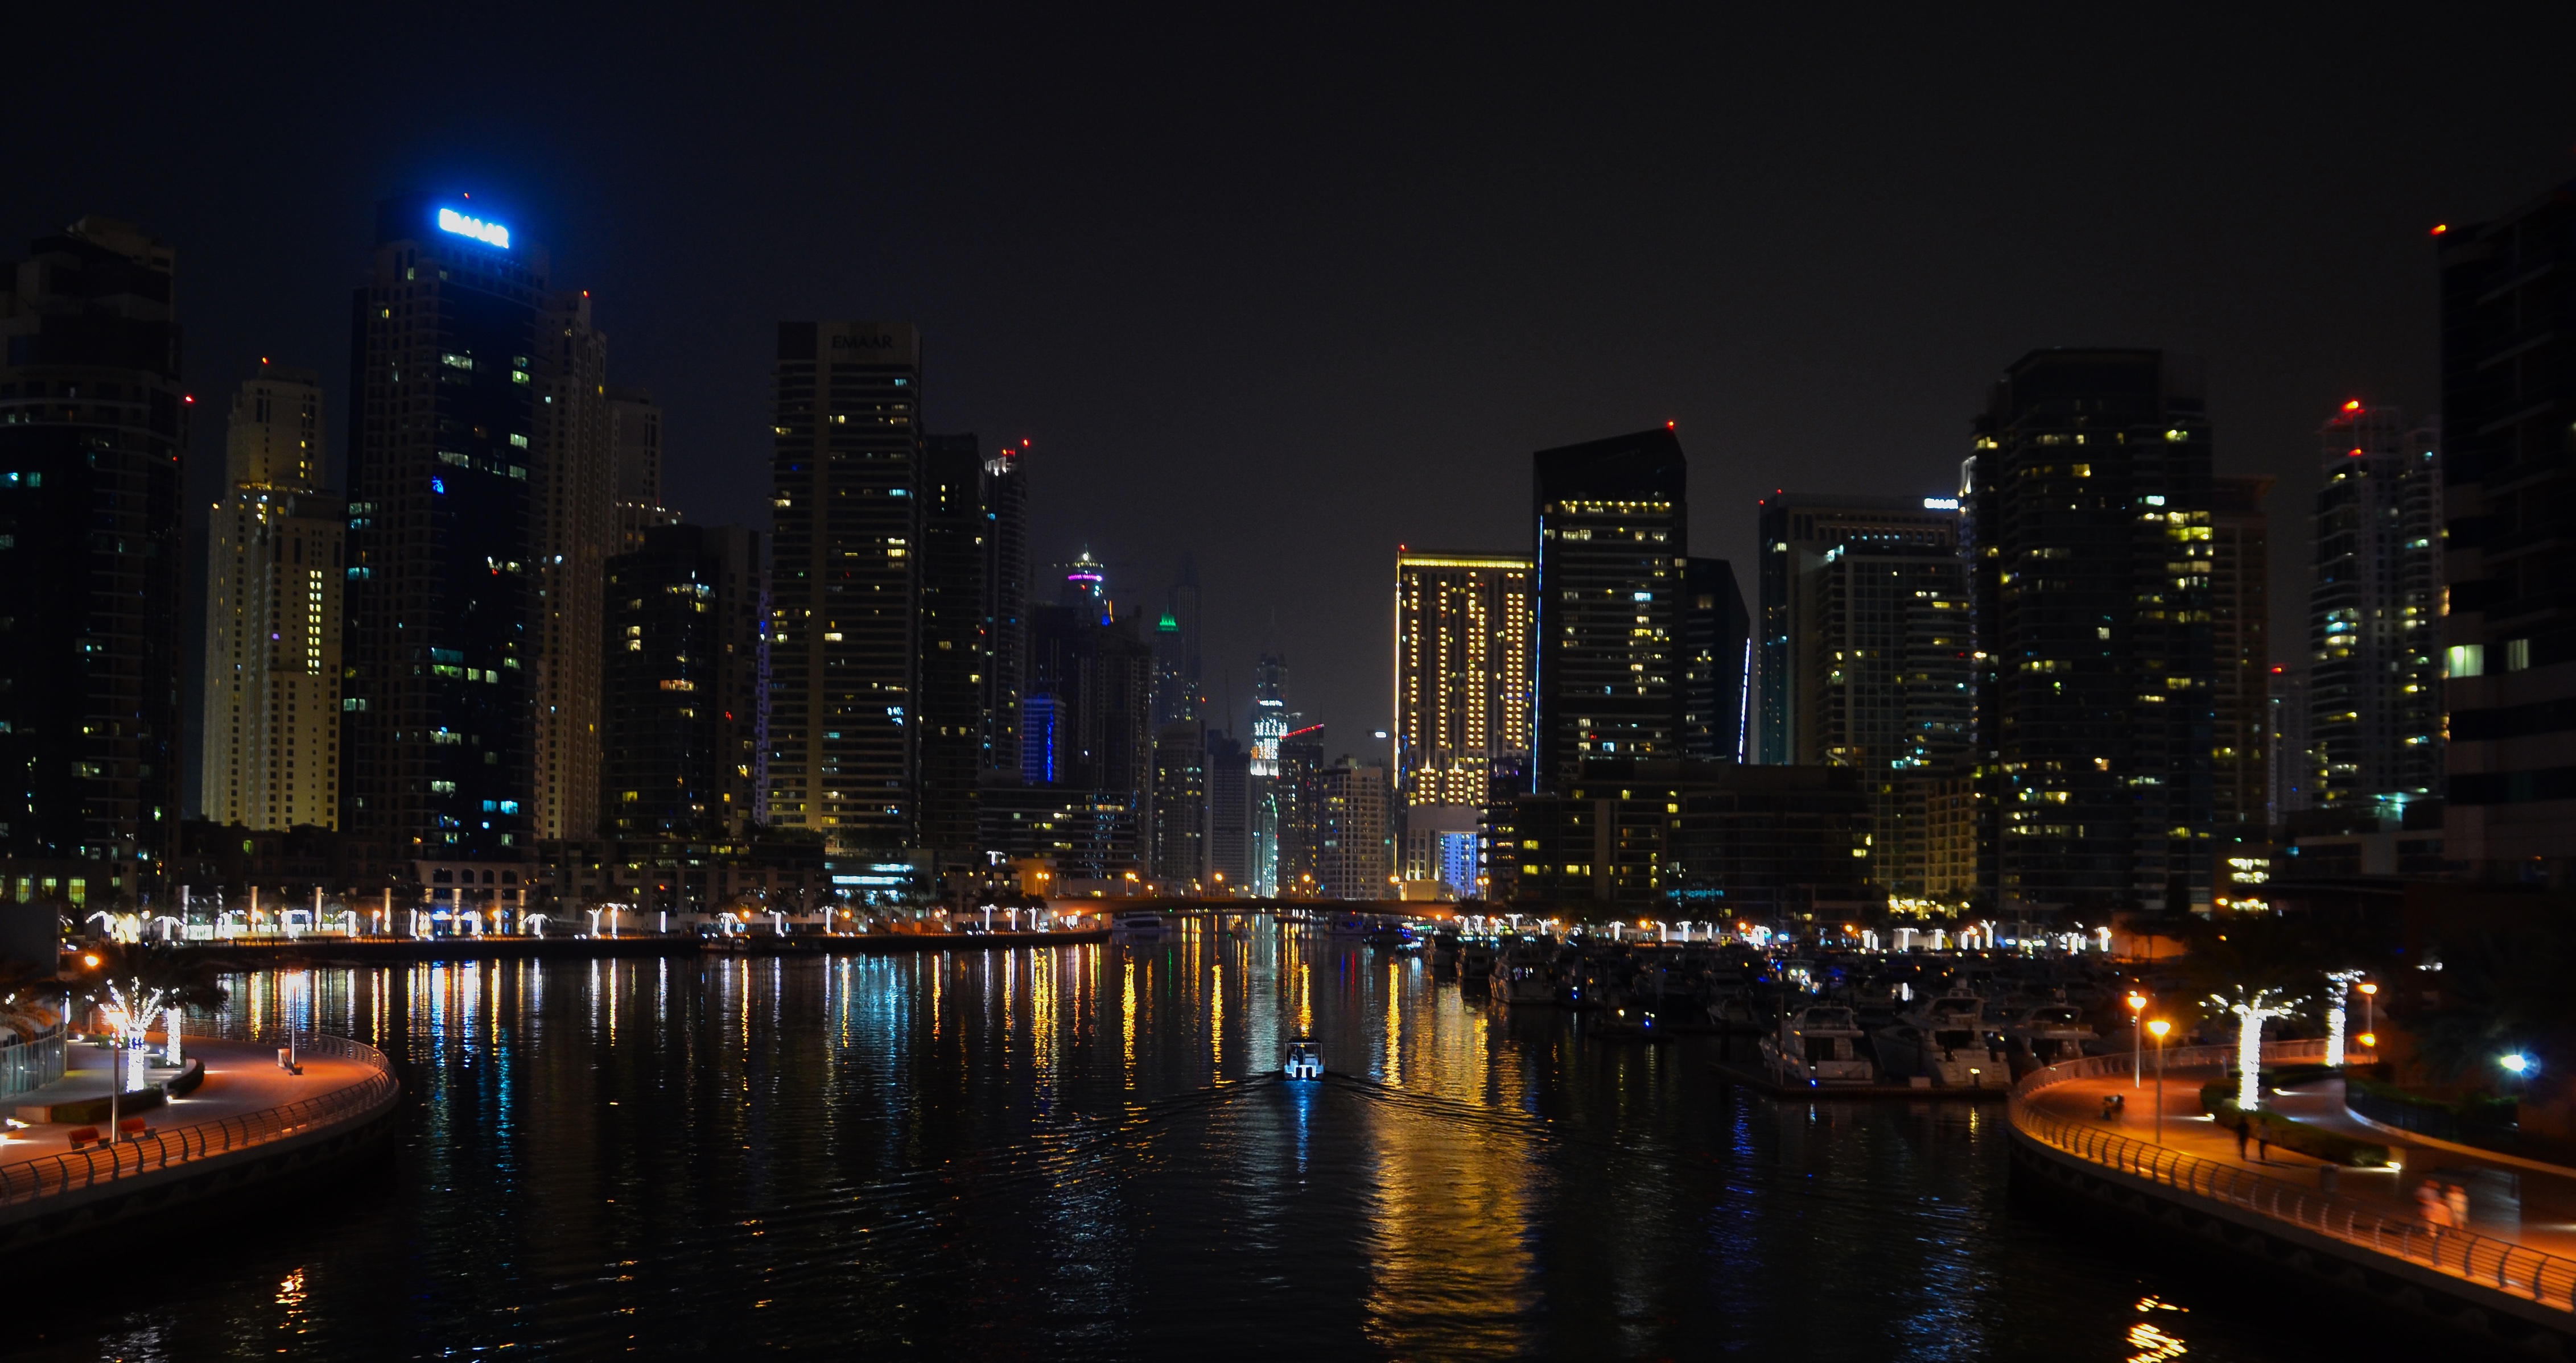 La notte di Dubai di AntoMarPh